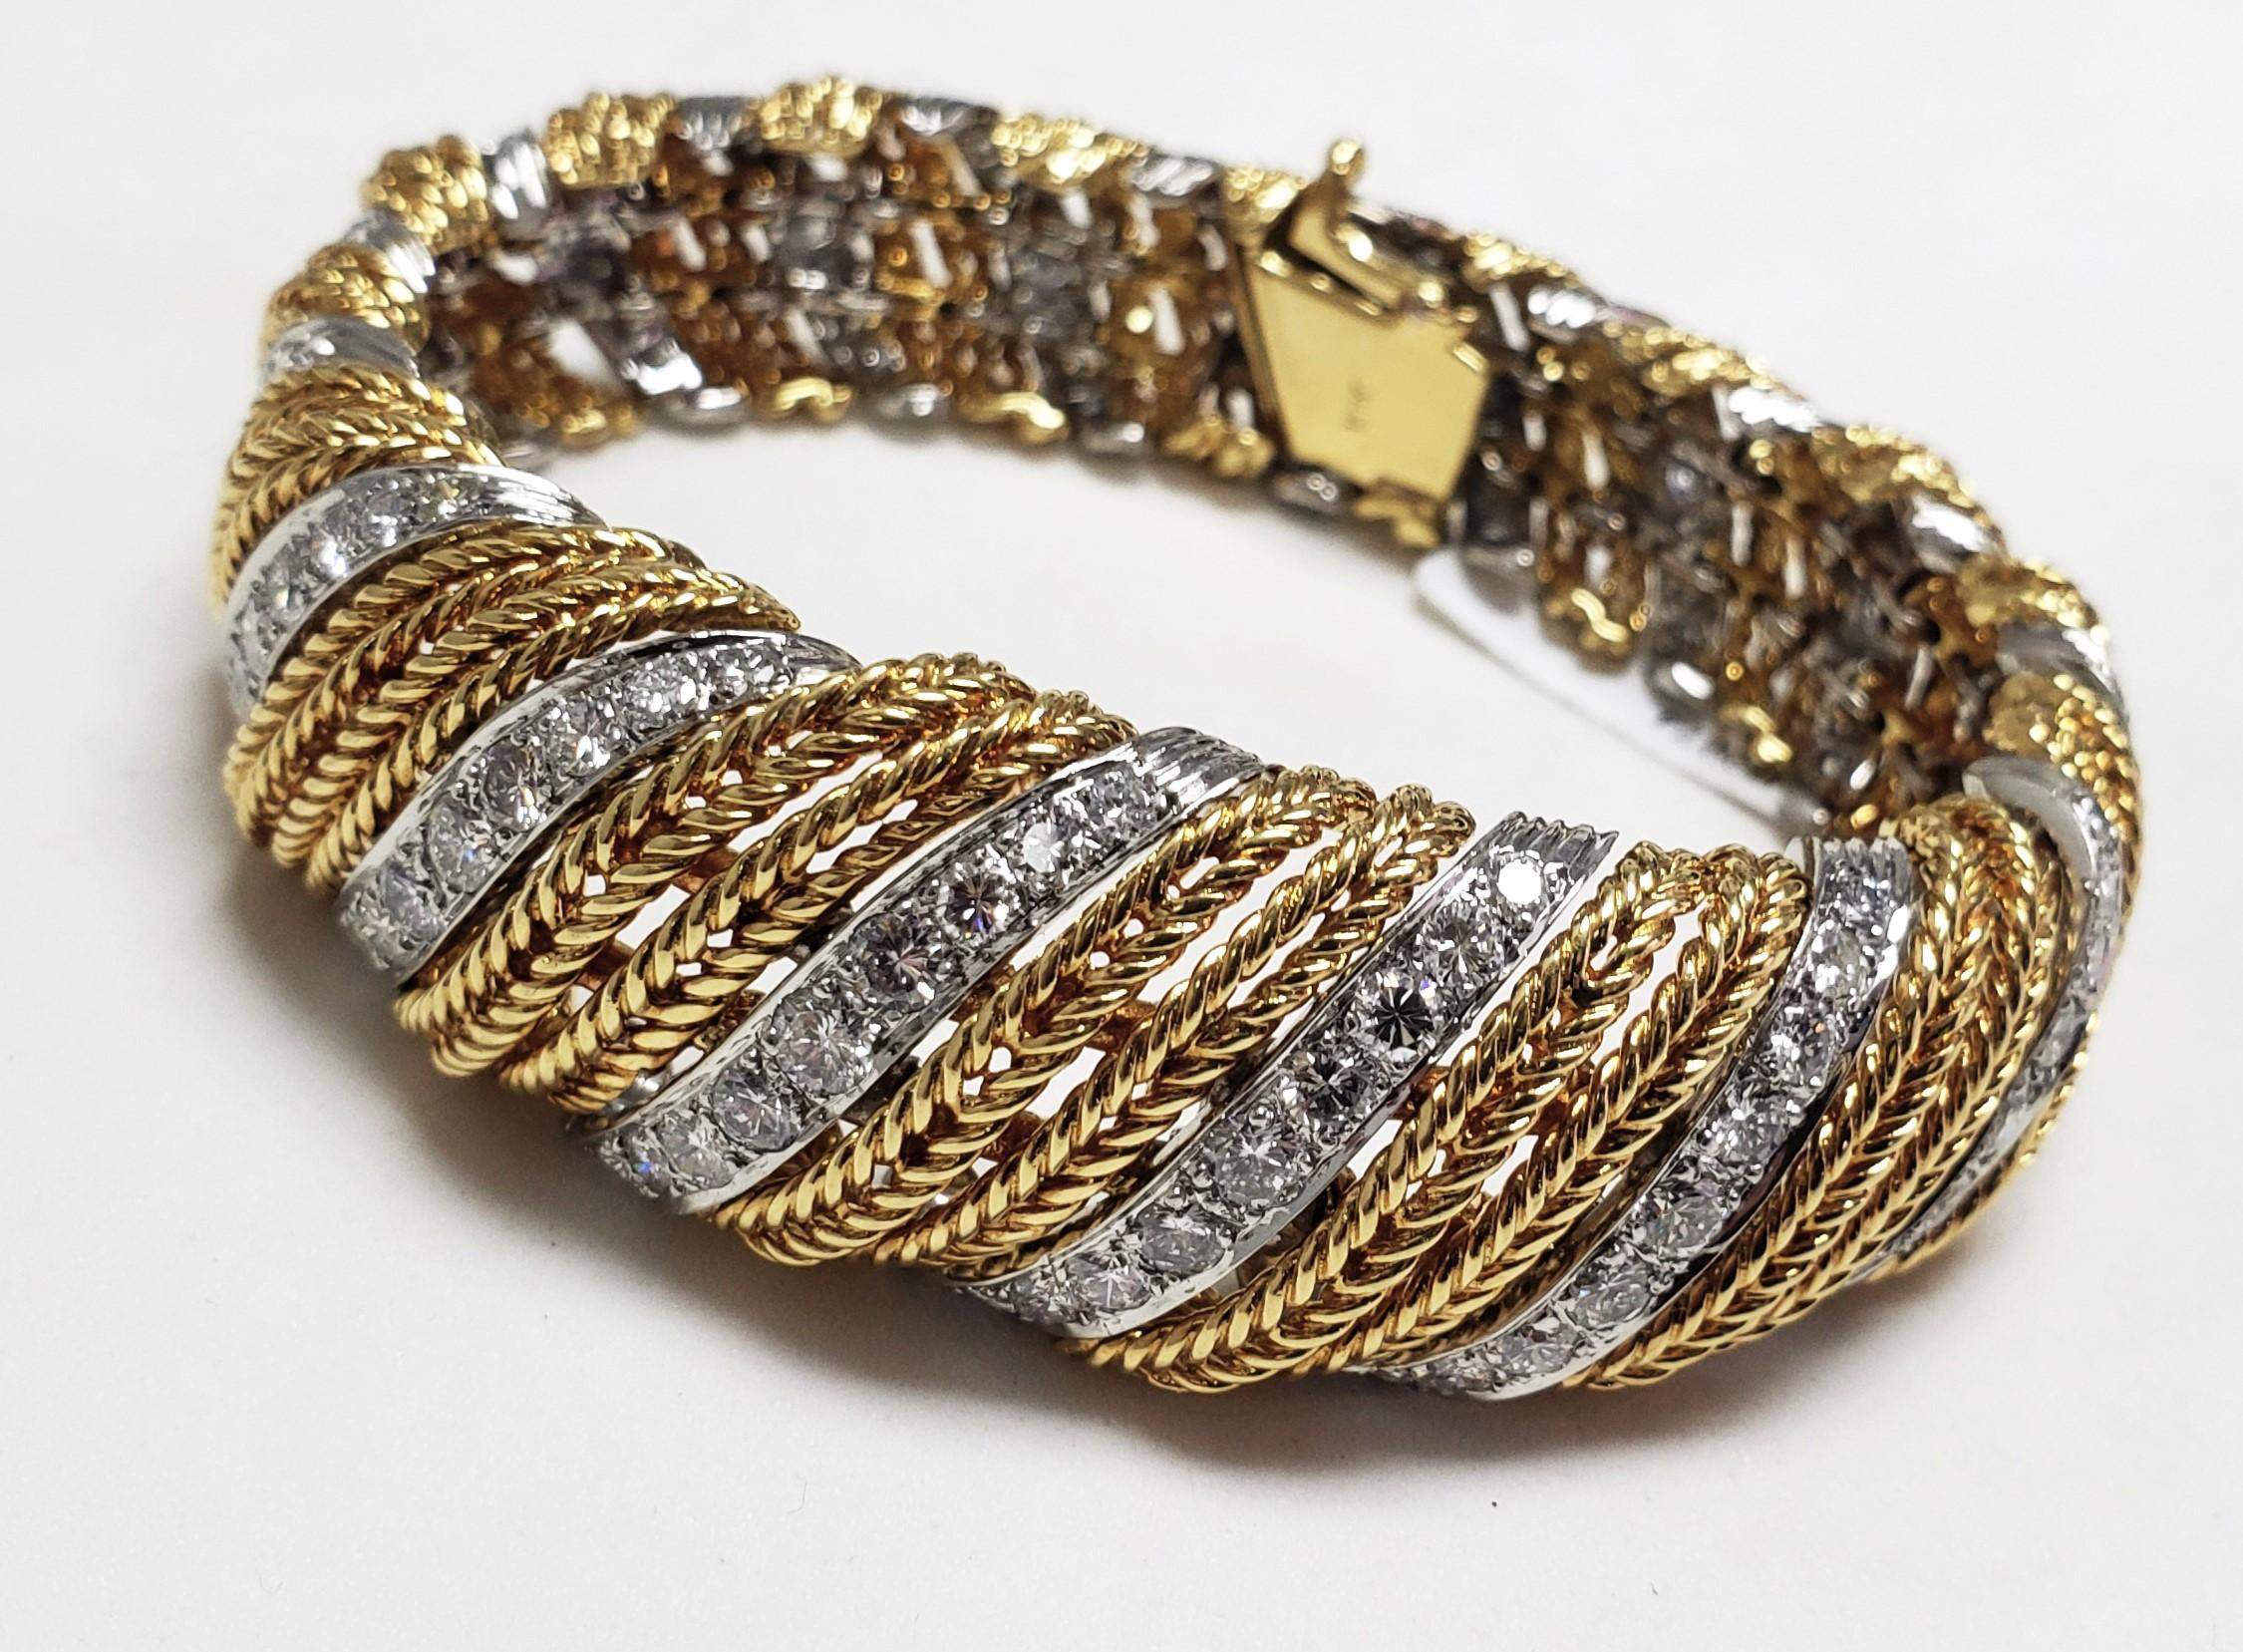 Wunderschönes Diamant-Tennisarmband aus den 1950er Jahren - ein echter Hingucker. MODELE STERLE Paris Armband mit 138 natürlichen Diamanten im runden Brillantschliff besetzt, wir schätzen 12,00ct Gesamtgewicht (könnten alte Diamanten im runden